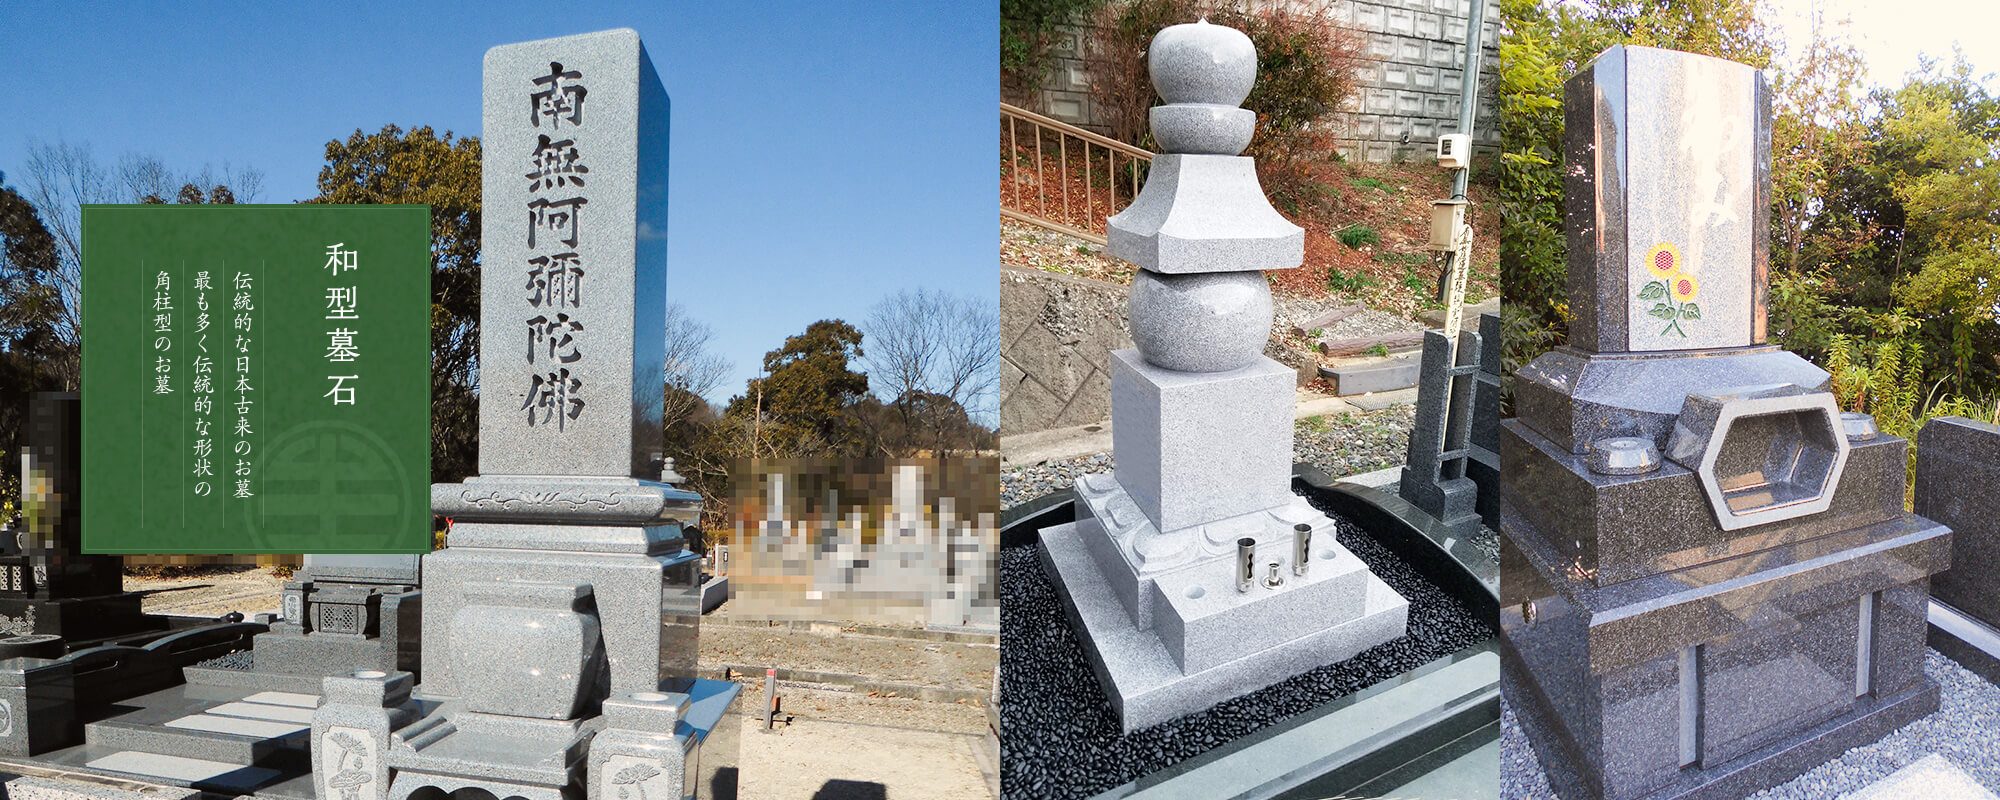 和型墓石 伝統的な日本古来のお墓 最も多く伝統的な形状の角柱型のお墓